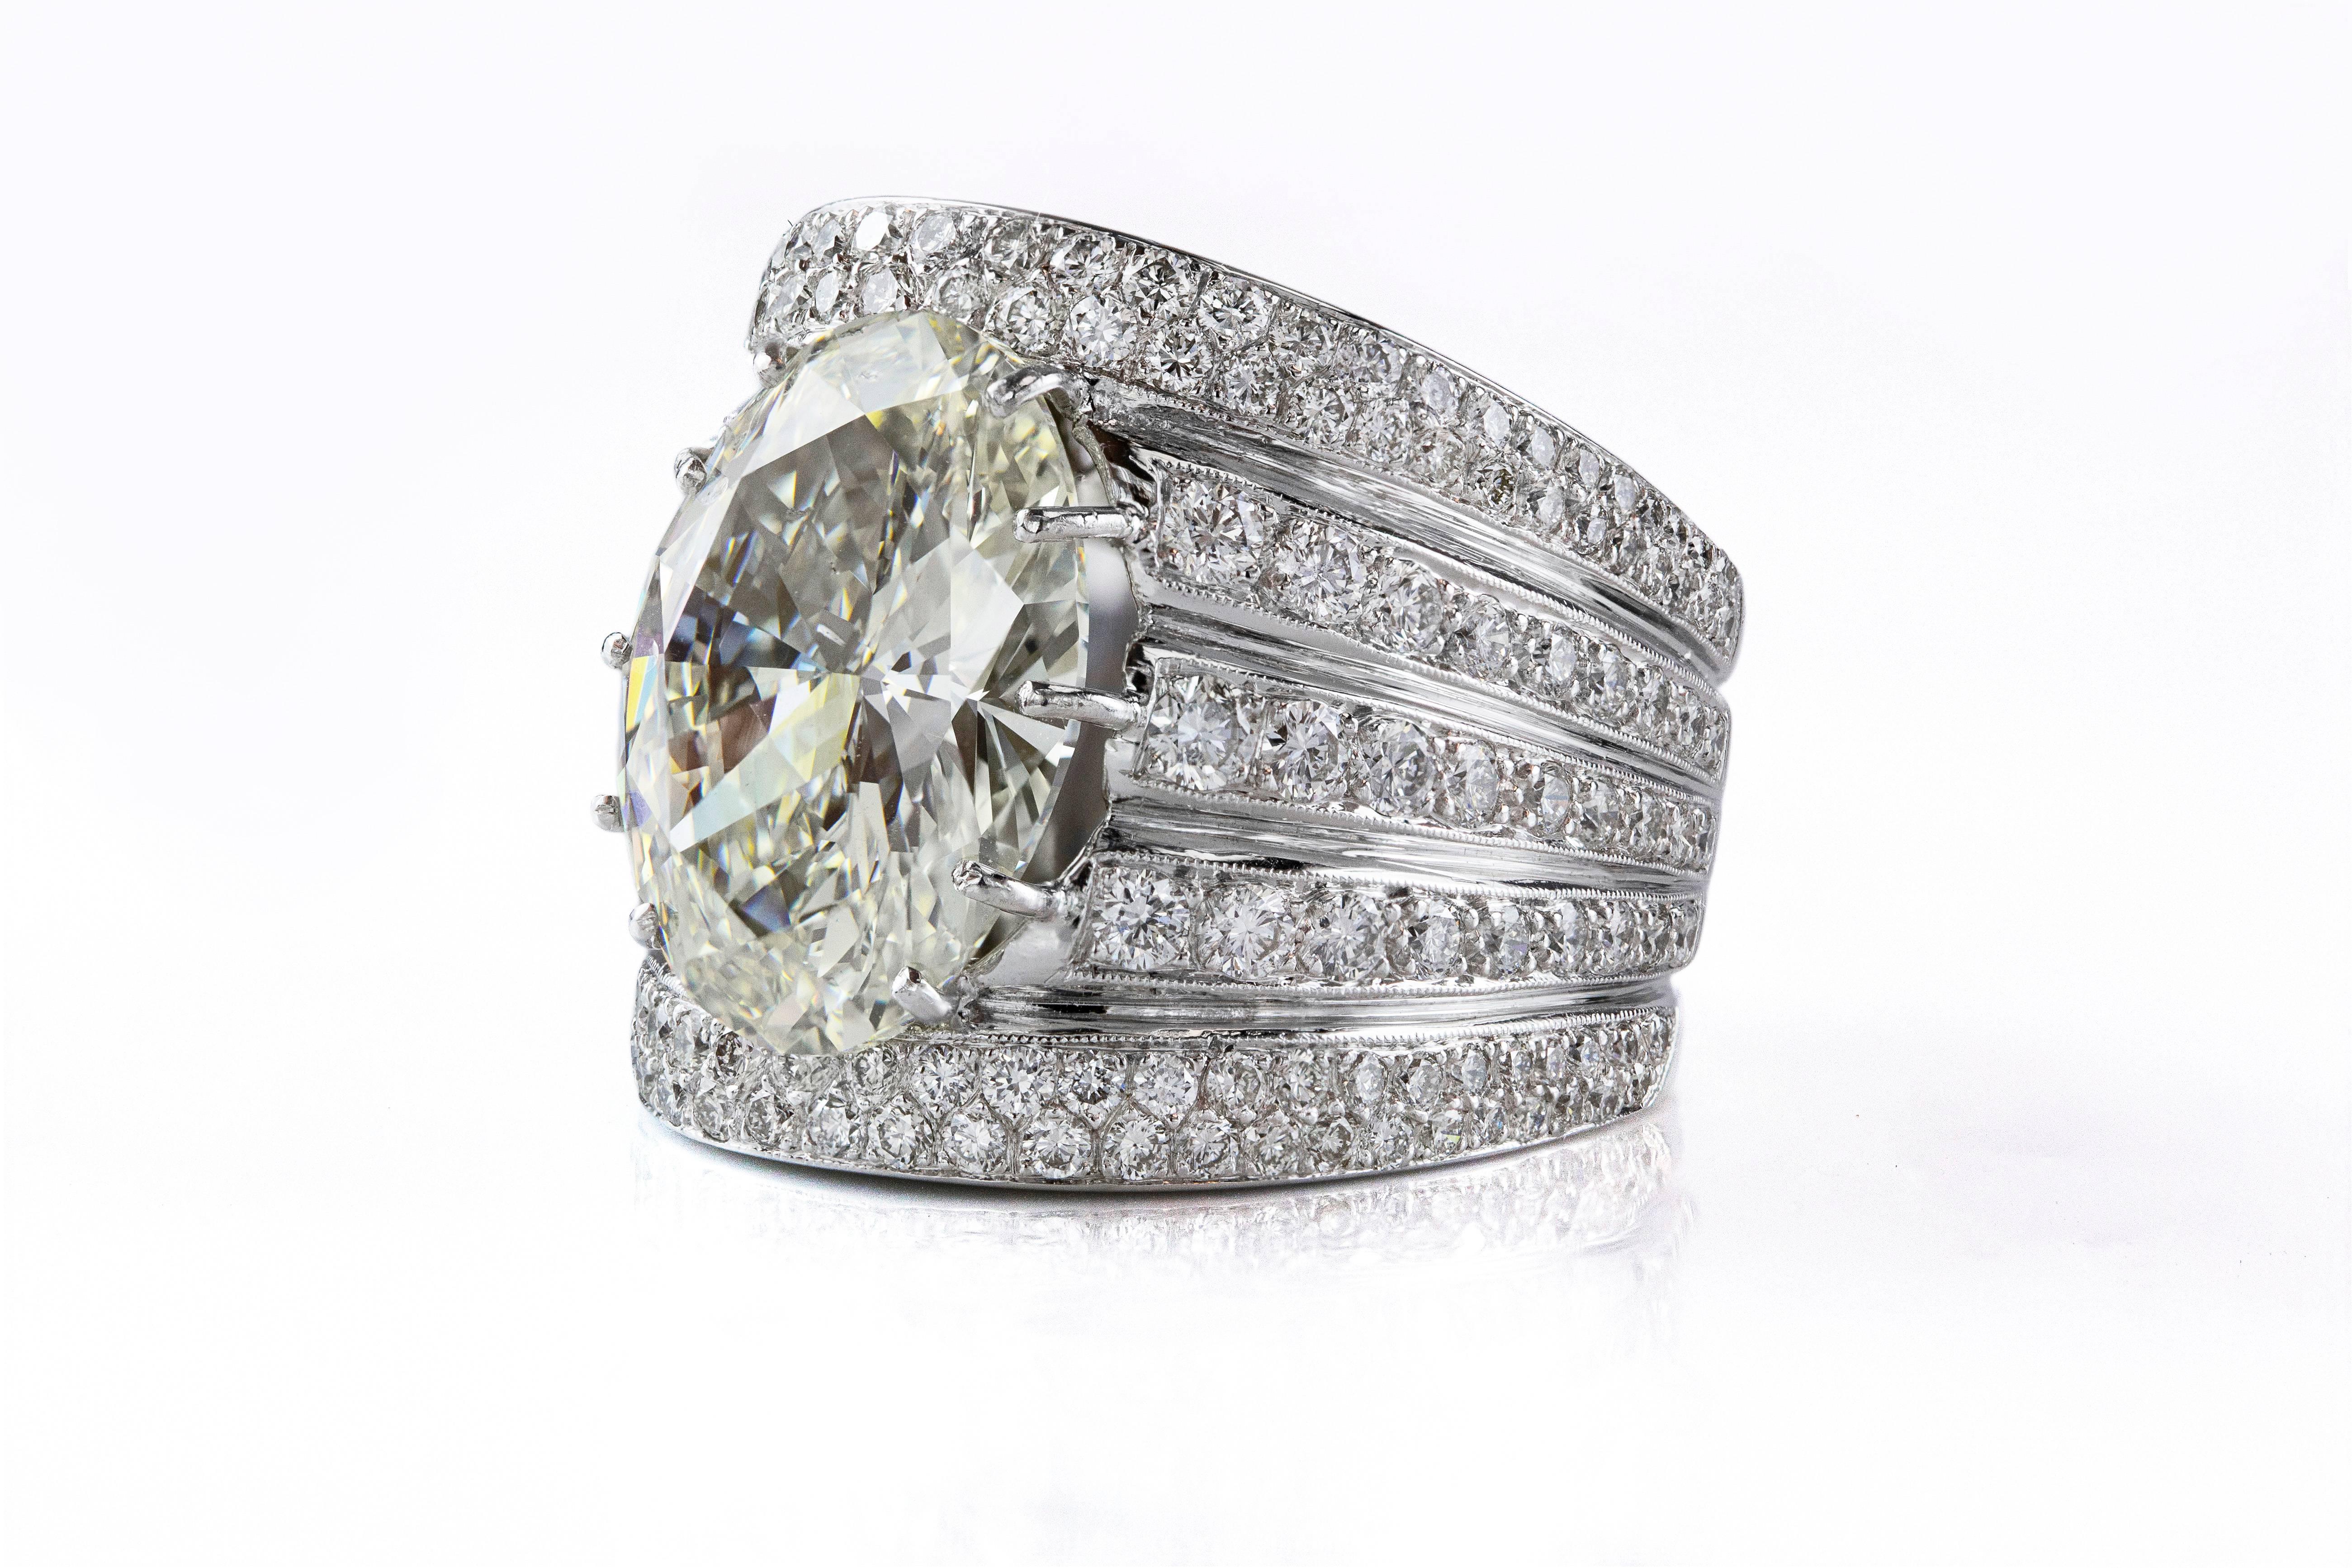 In der Mitte des Rings befindet sich ein Diamant im Ovalschliff mit einem Gewicht von 10,78 Karat. Der Mittelstein ist mit 5 Reihen von runden Brillanten von insgesamt 3,25 Karat besetzt. Hergestellt aus Platin. Größe 7 1/2. M Farbe SI1